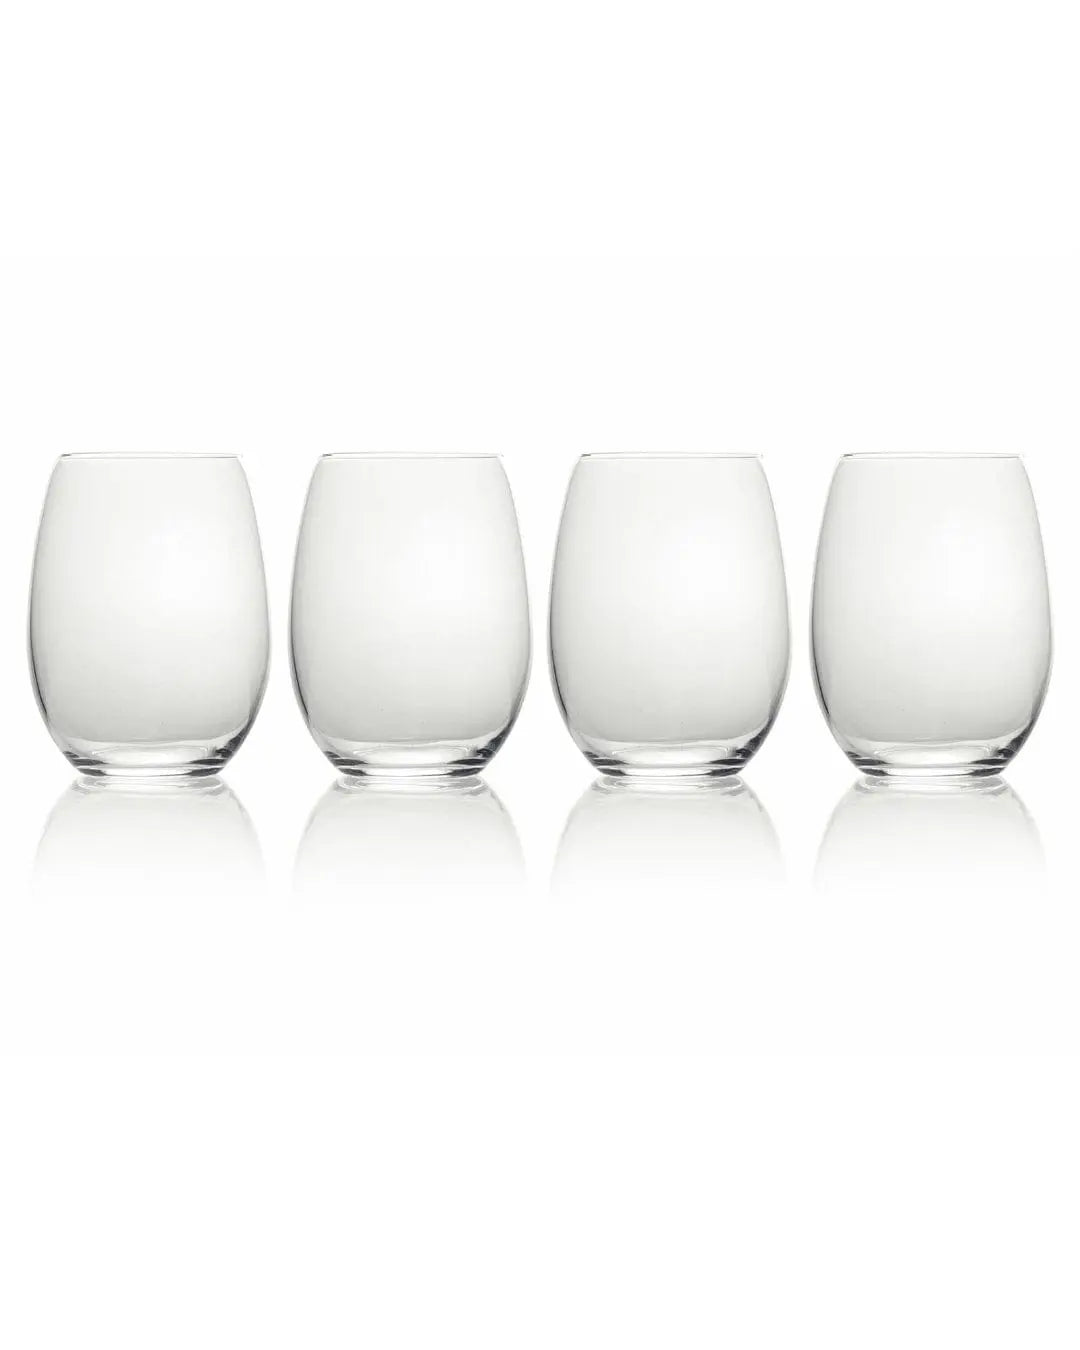 https://cdn.shopify.com/s/files/1/0078/7038/2195/files/mikasa-julie-stemless-wine-pack-of-4-glasses-tableware-32841446817907.jpg?v=1703673869&width=1080